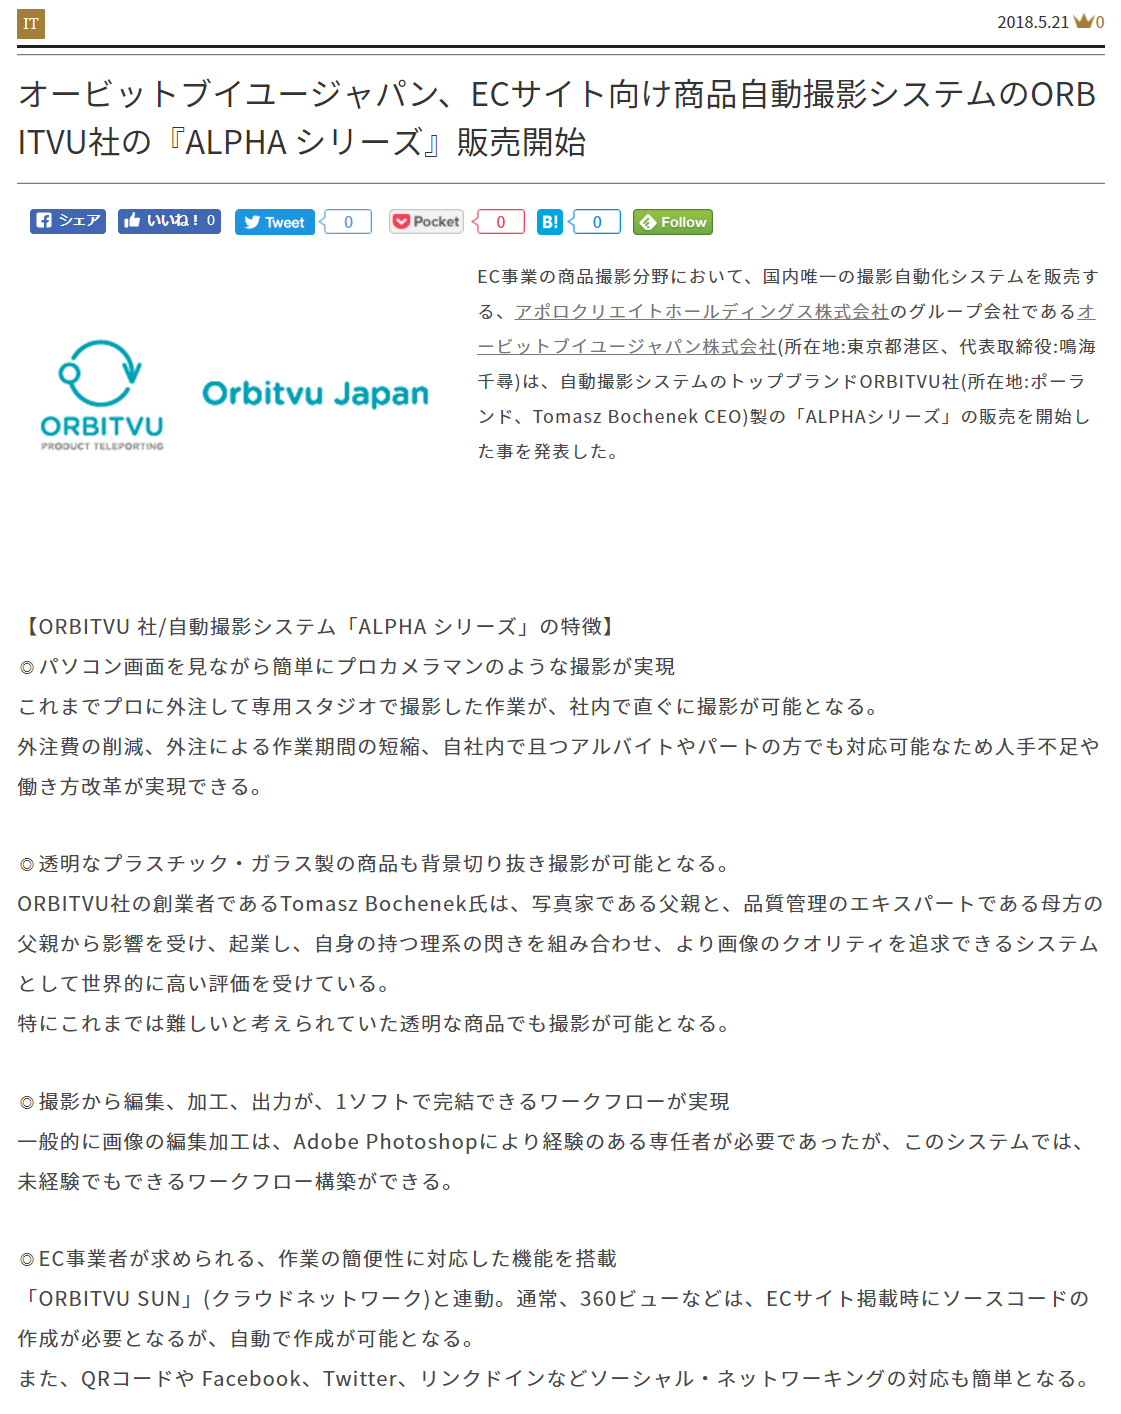 オービットブイユージャパンがベンチャータイムスに掲載されました